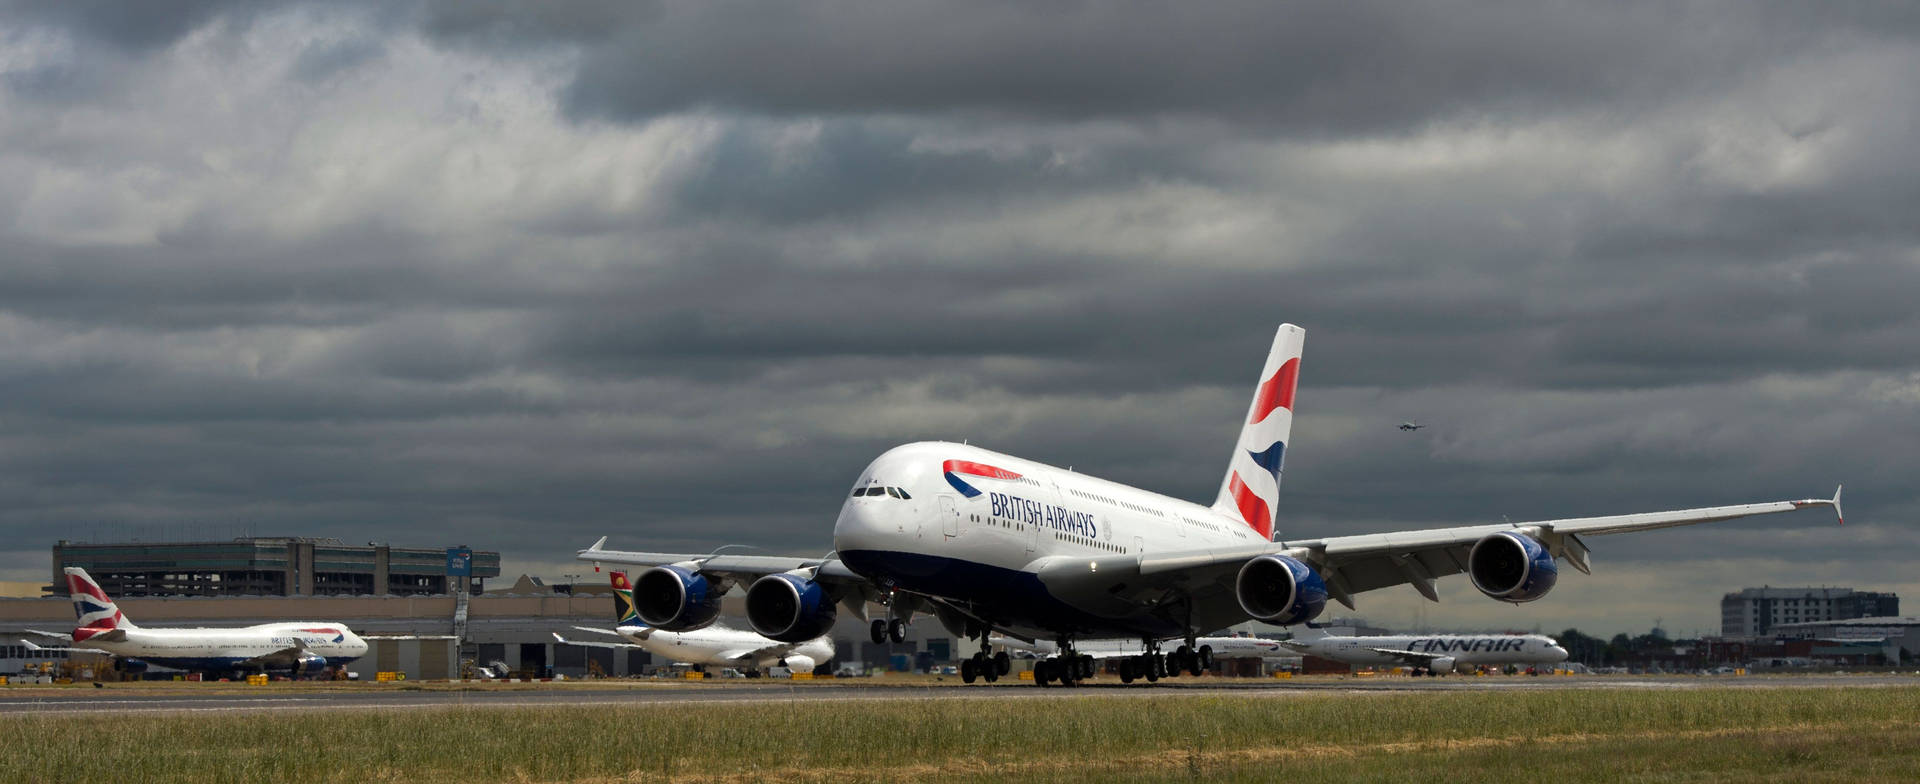 British Airways Runway With Dark Clouds Wallpaper